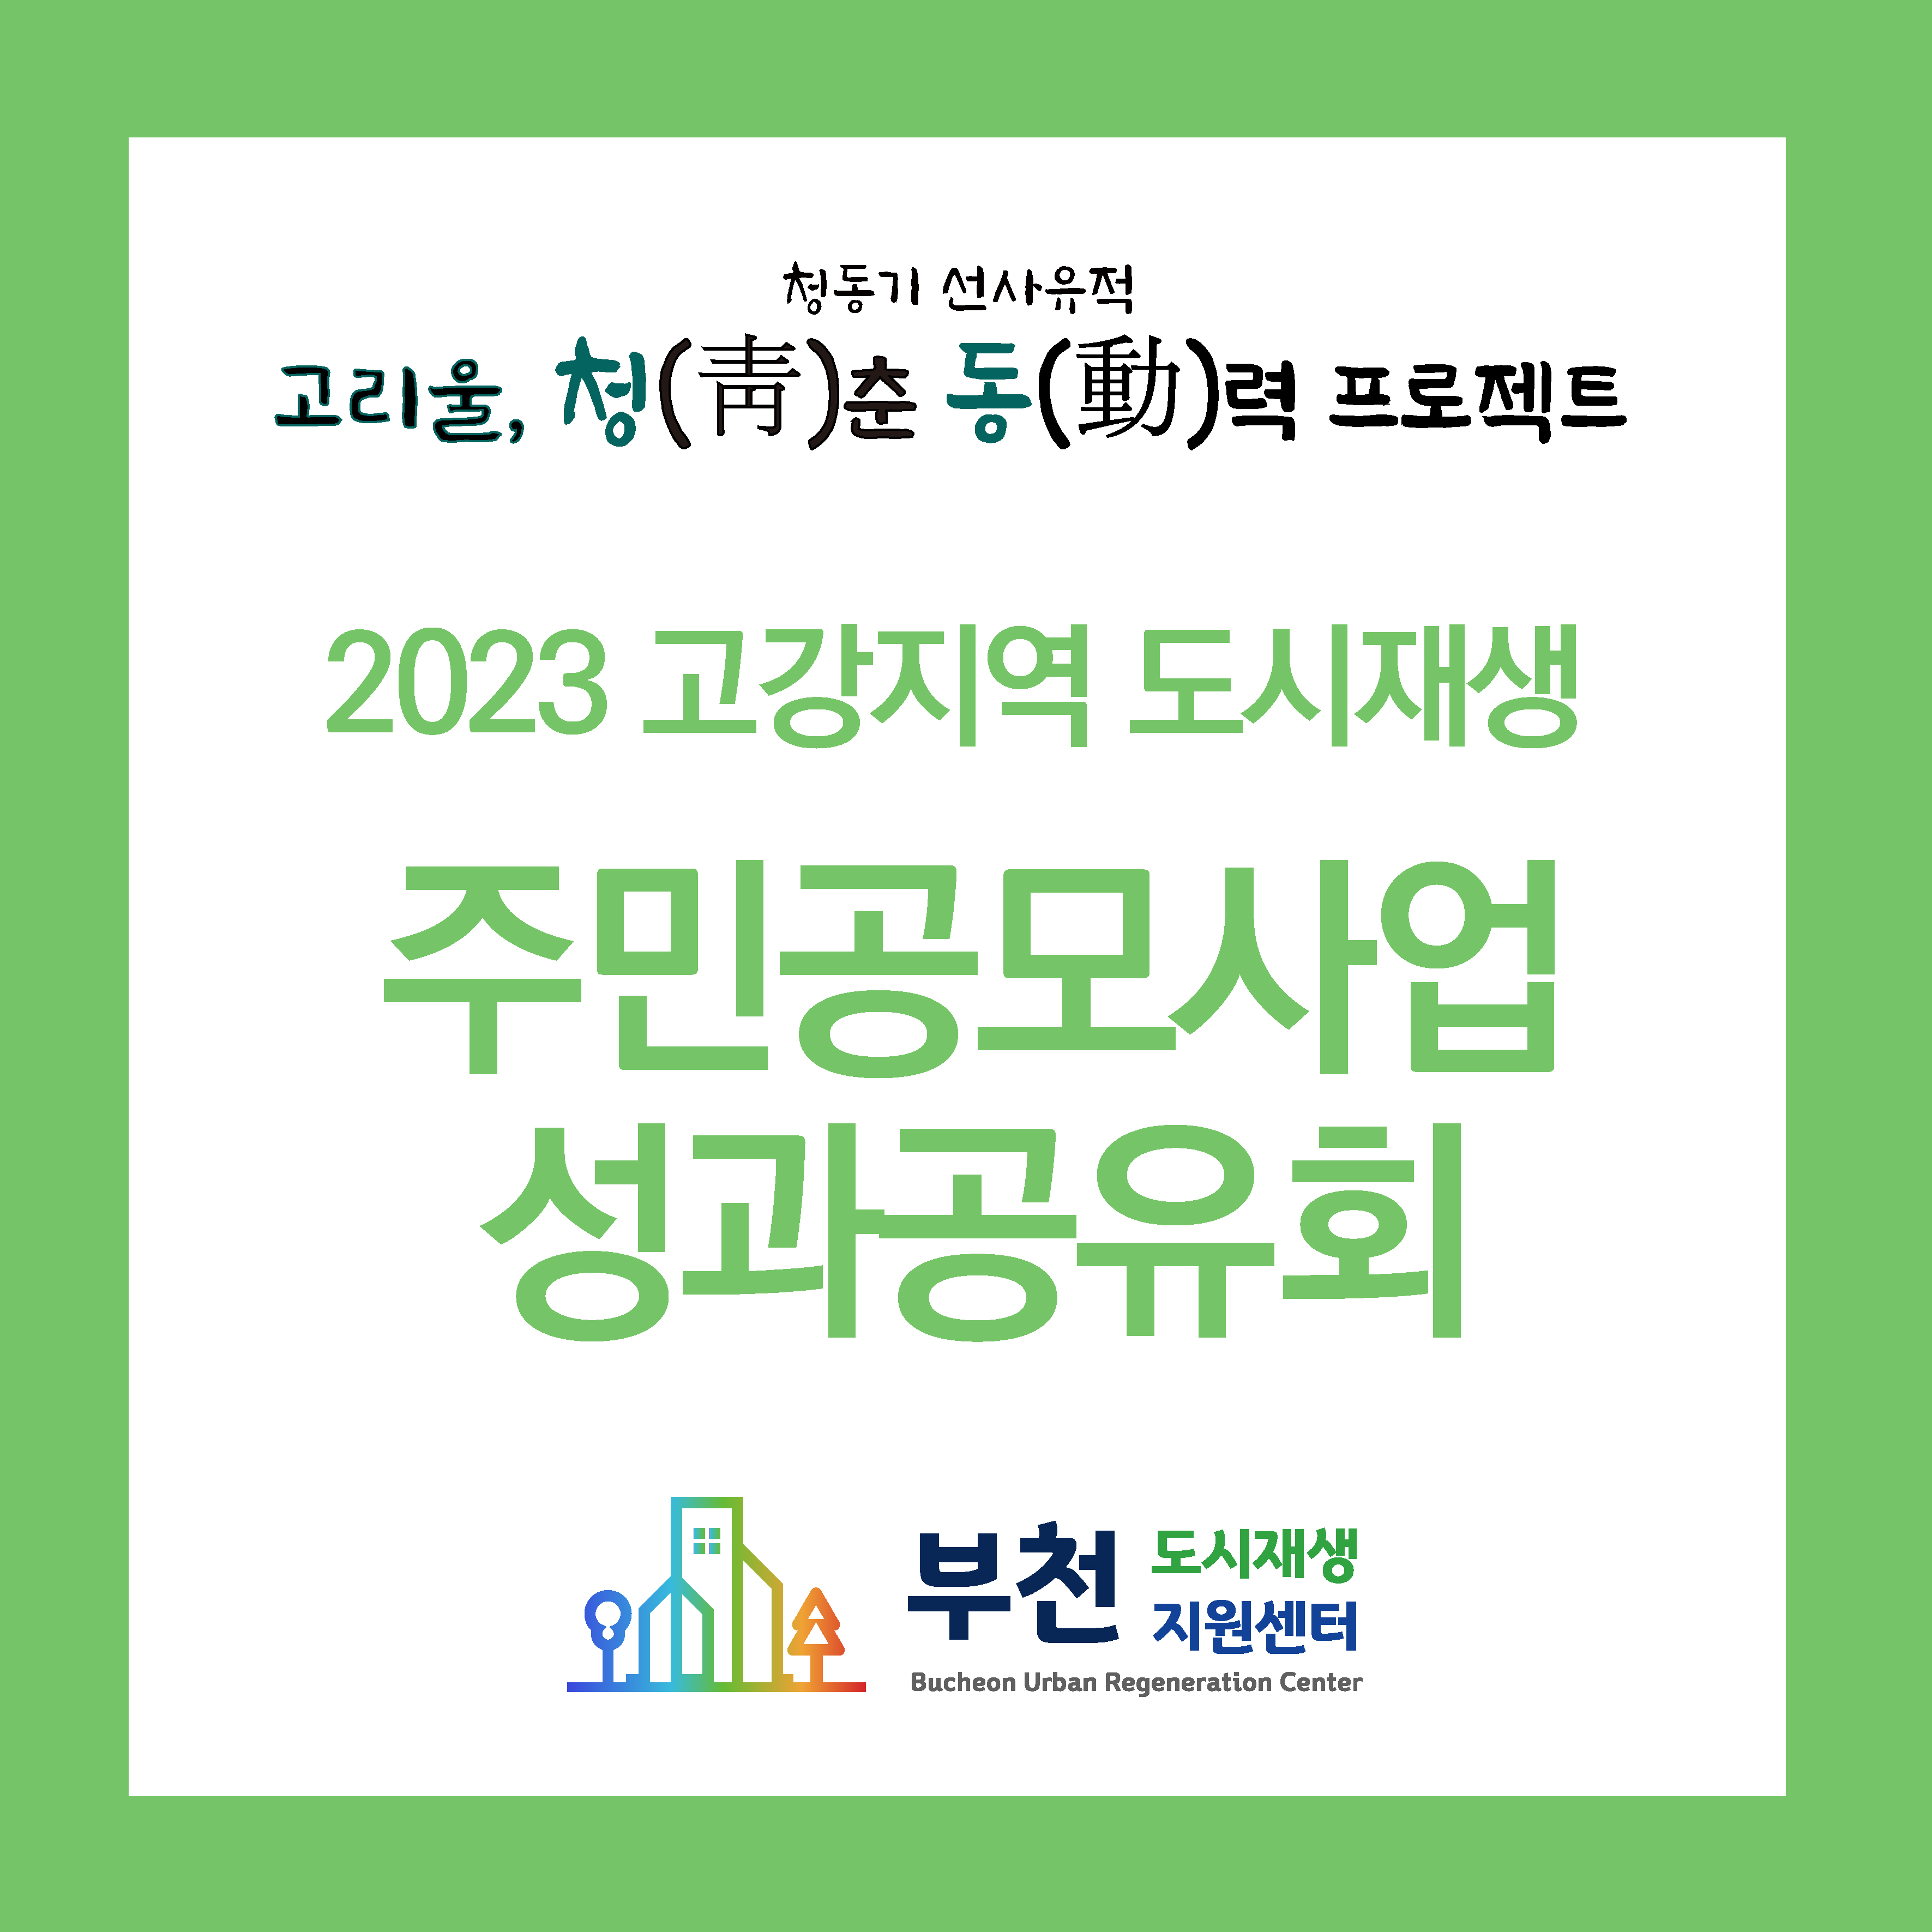 2023 주민공모사업 성과공유회